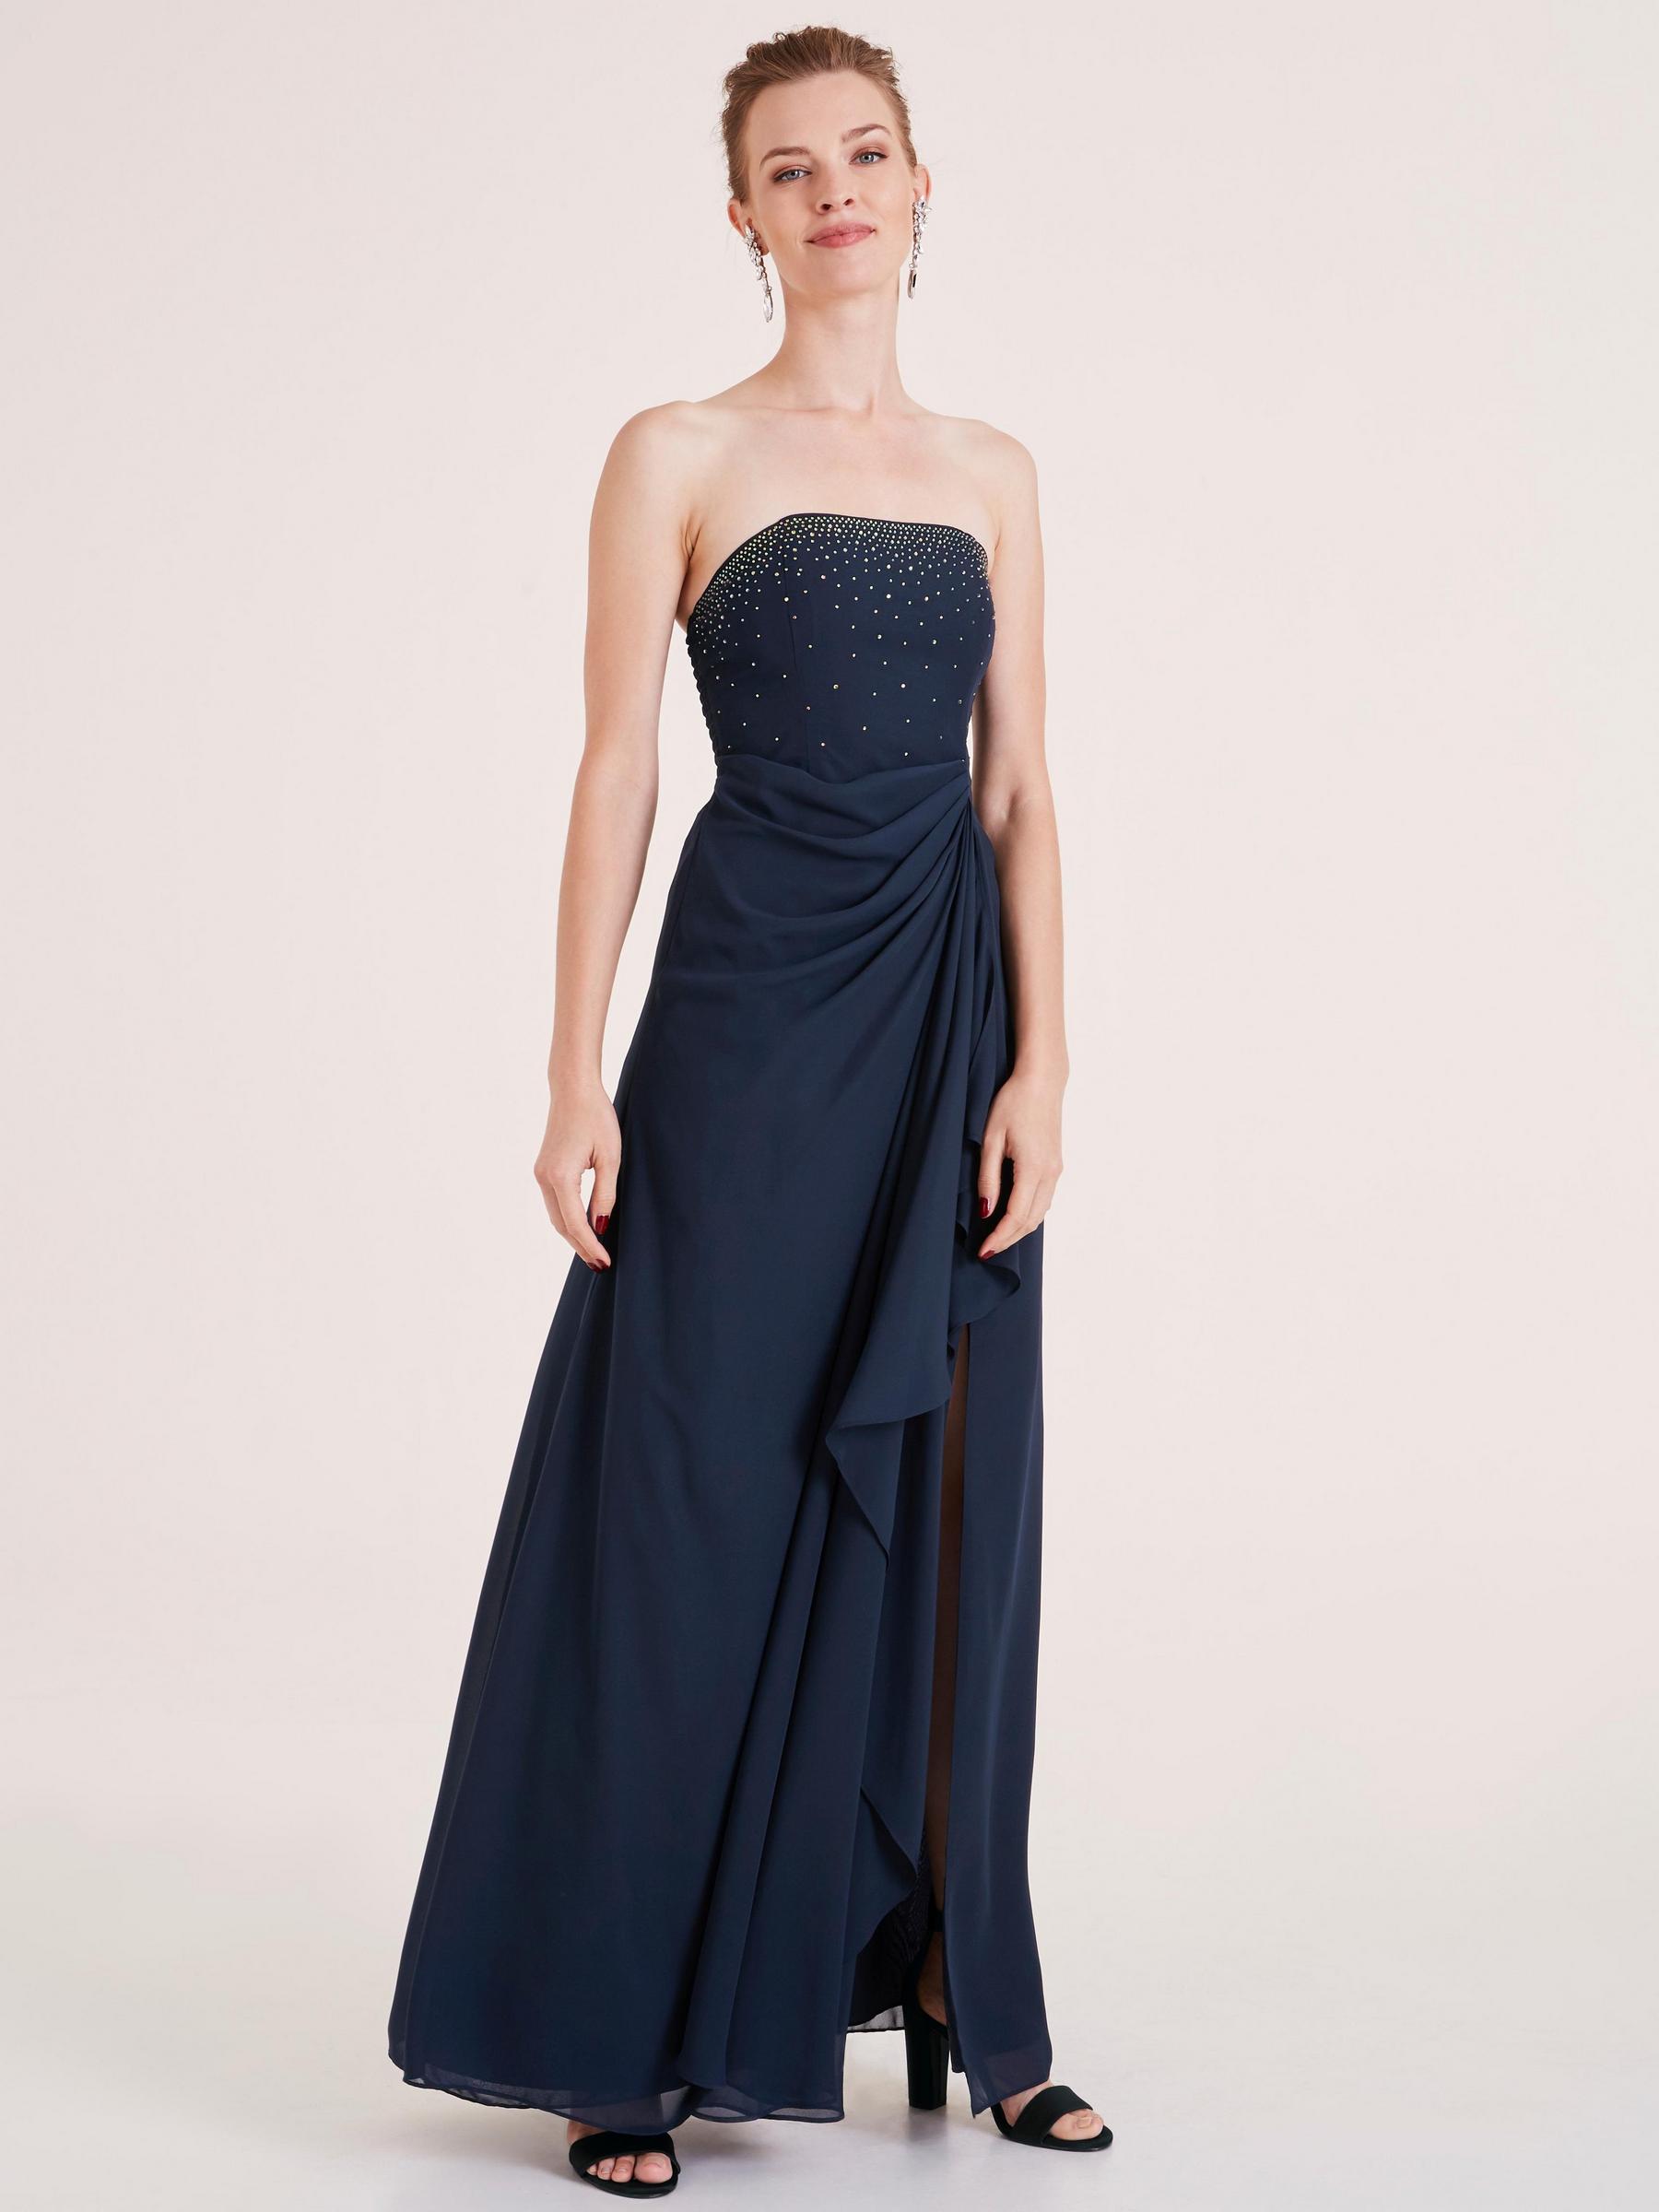 modèle de robe bustier longue bleu marine, avec strass sur la poitrine